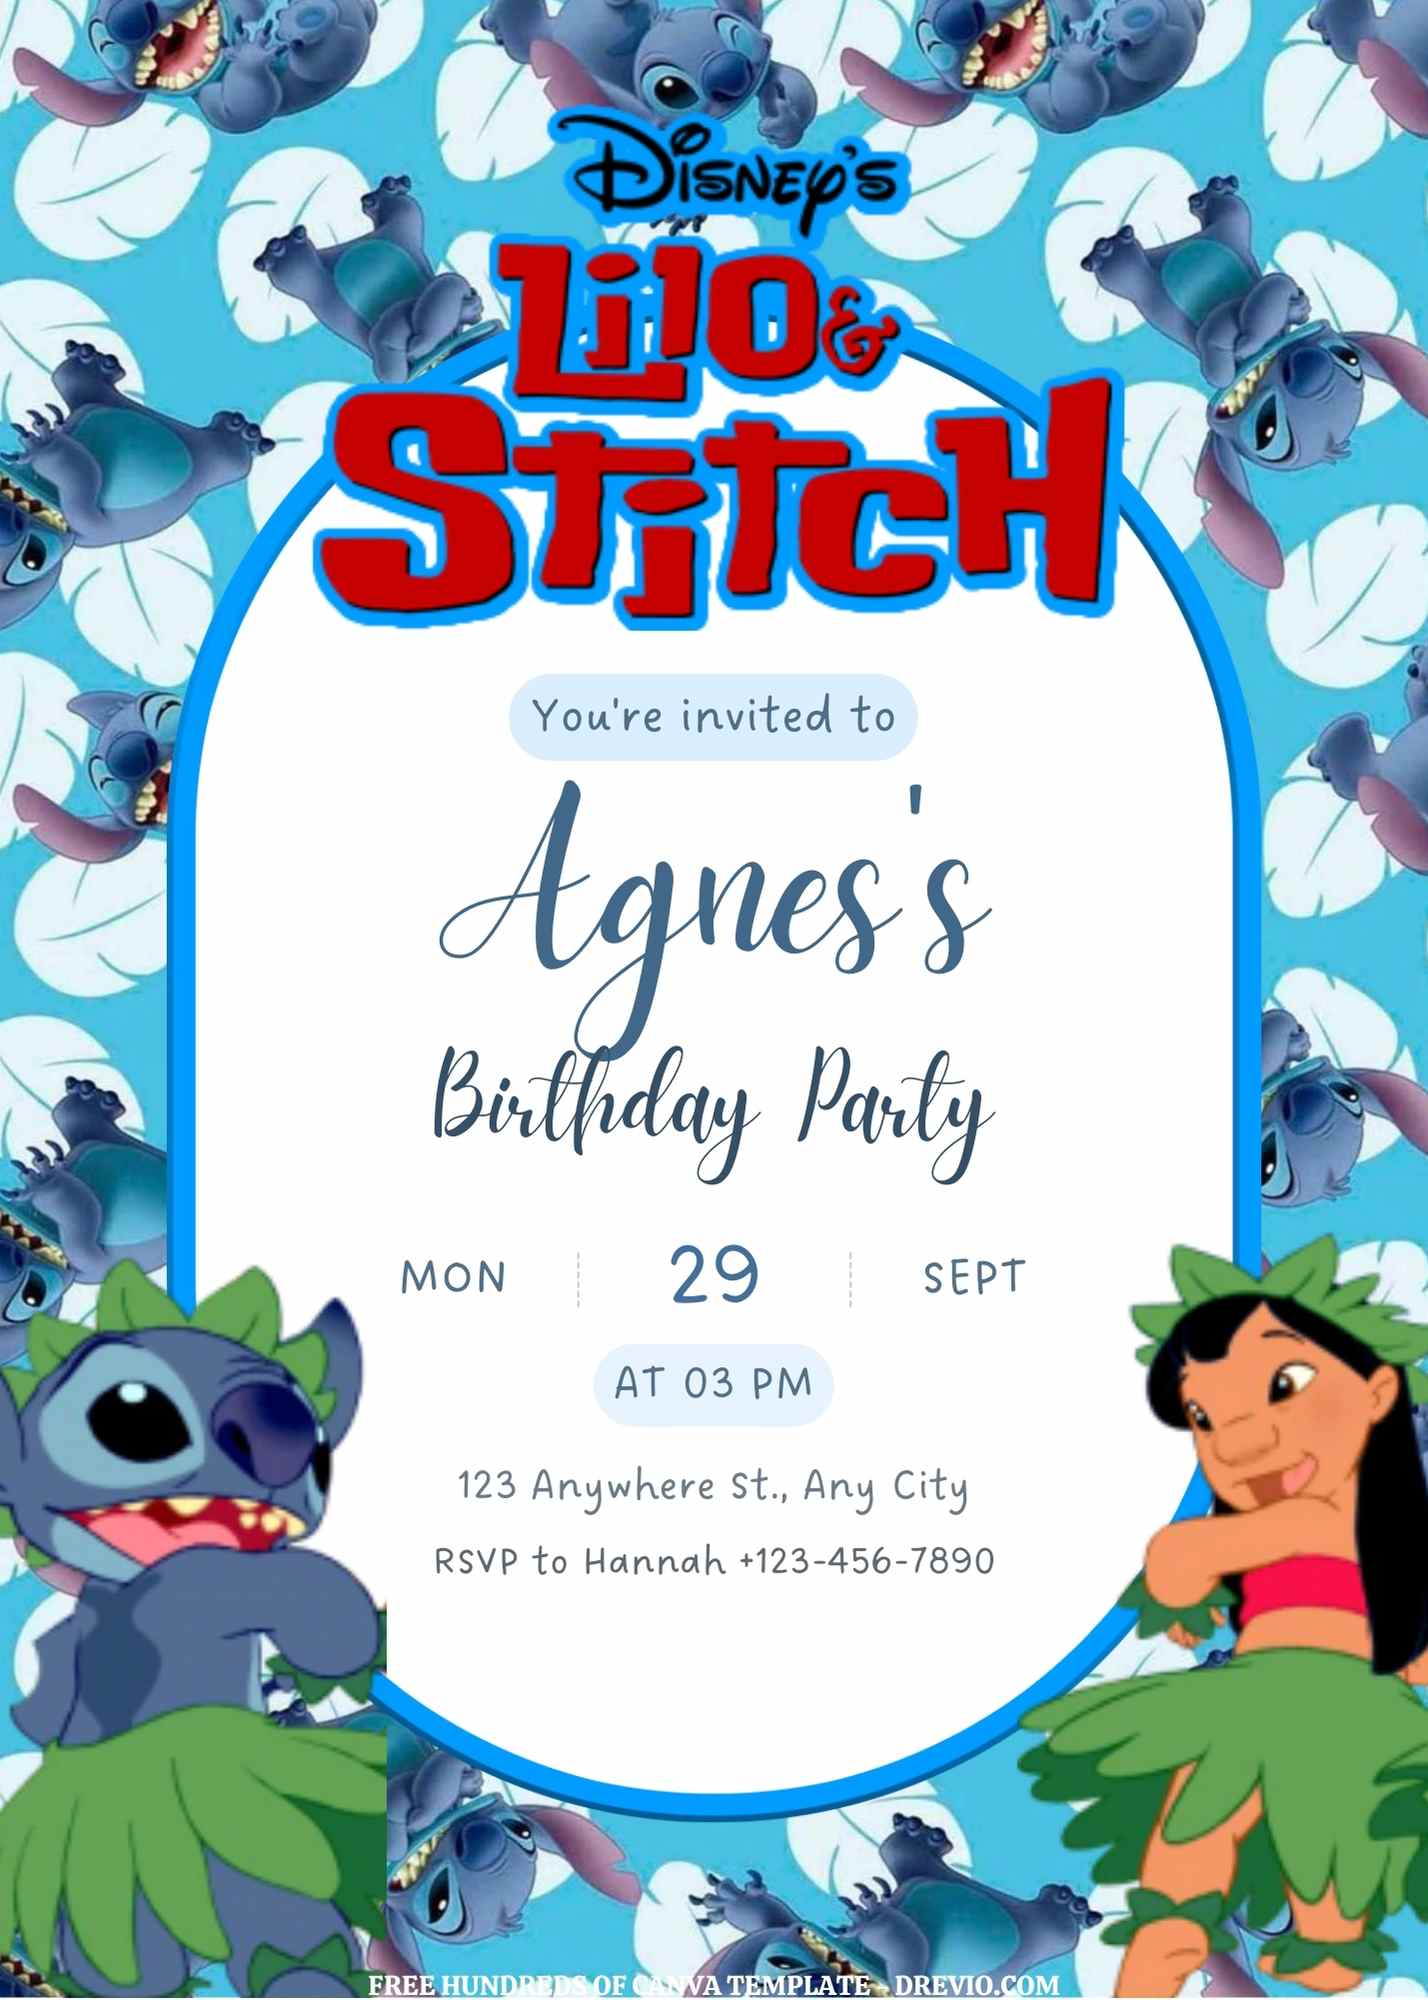 Lilo Stitch Party Templates, Lilo & Stitch Birthday Decor, Party